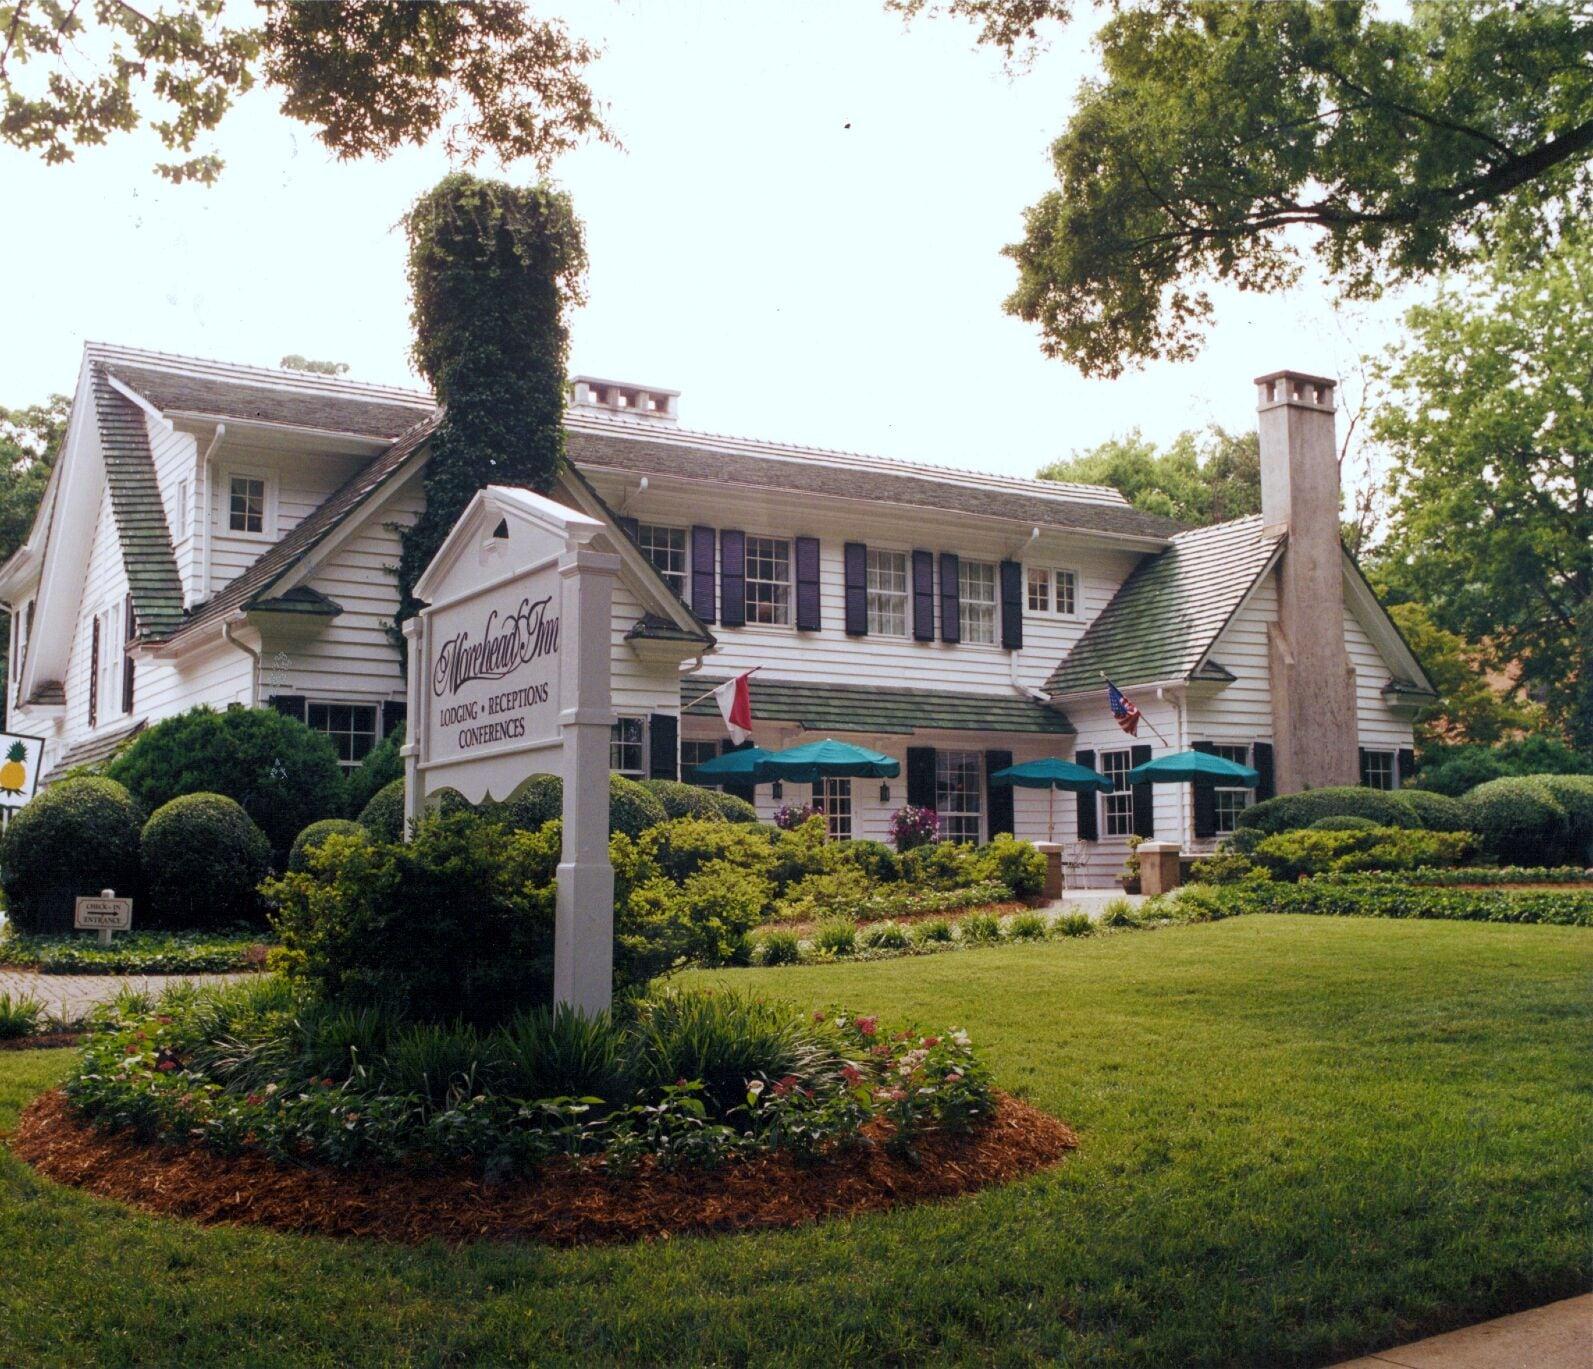 The Morehead Inn image